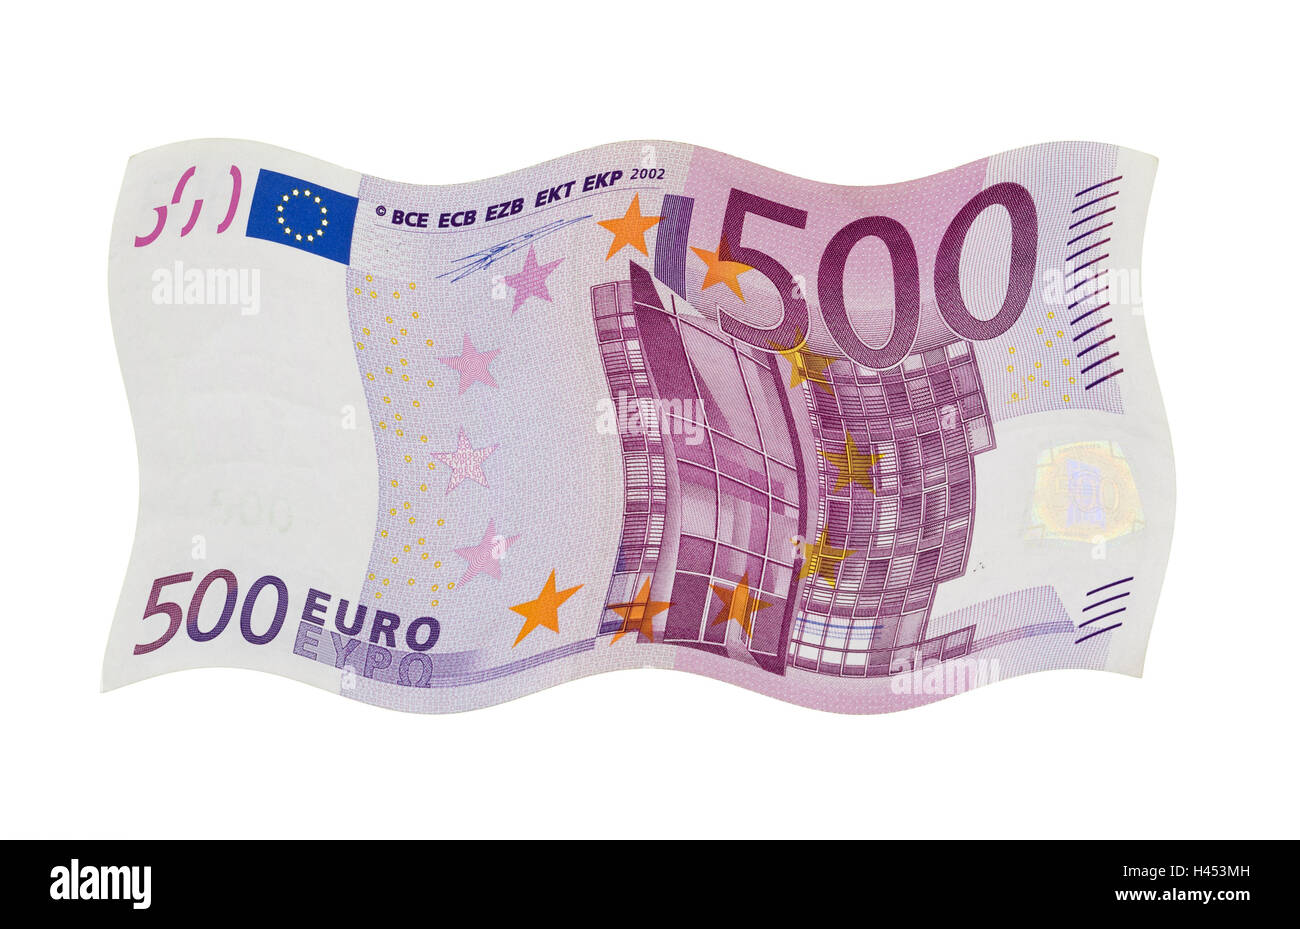 Fünfhundert-Euro-Banknote, verzerrt, corrugatedly, 500, 500, Geld, Bargeld, Licht, Geldschein, Euro, Eurolight, Fremdwährung, sparen, sparen, gespeichert, Studio, Produktfotografie, Freisteller, Stockfoto